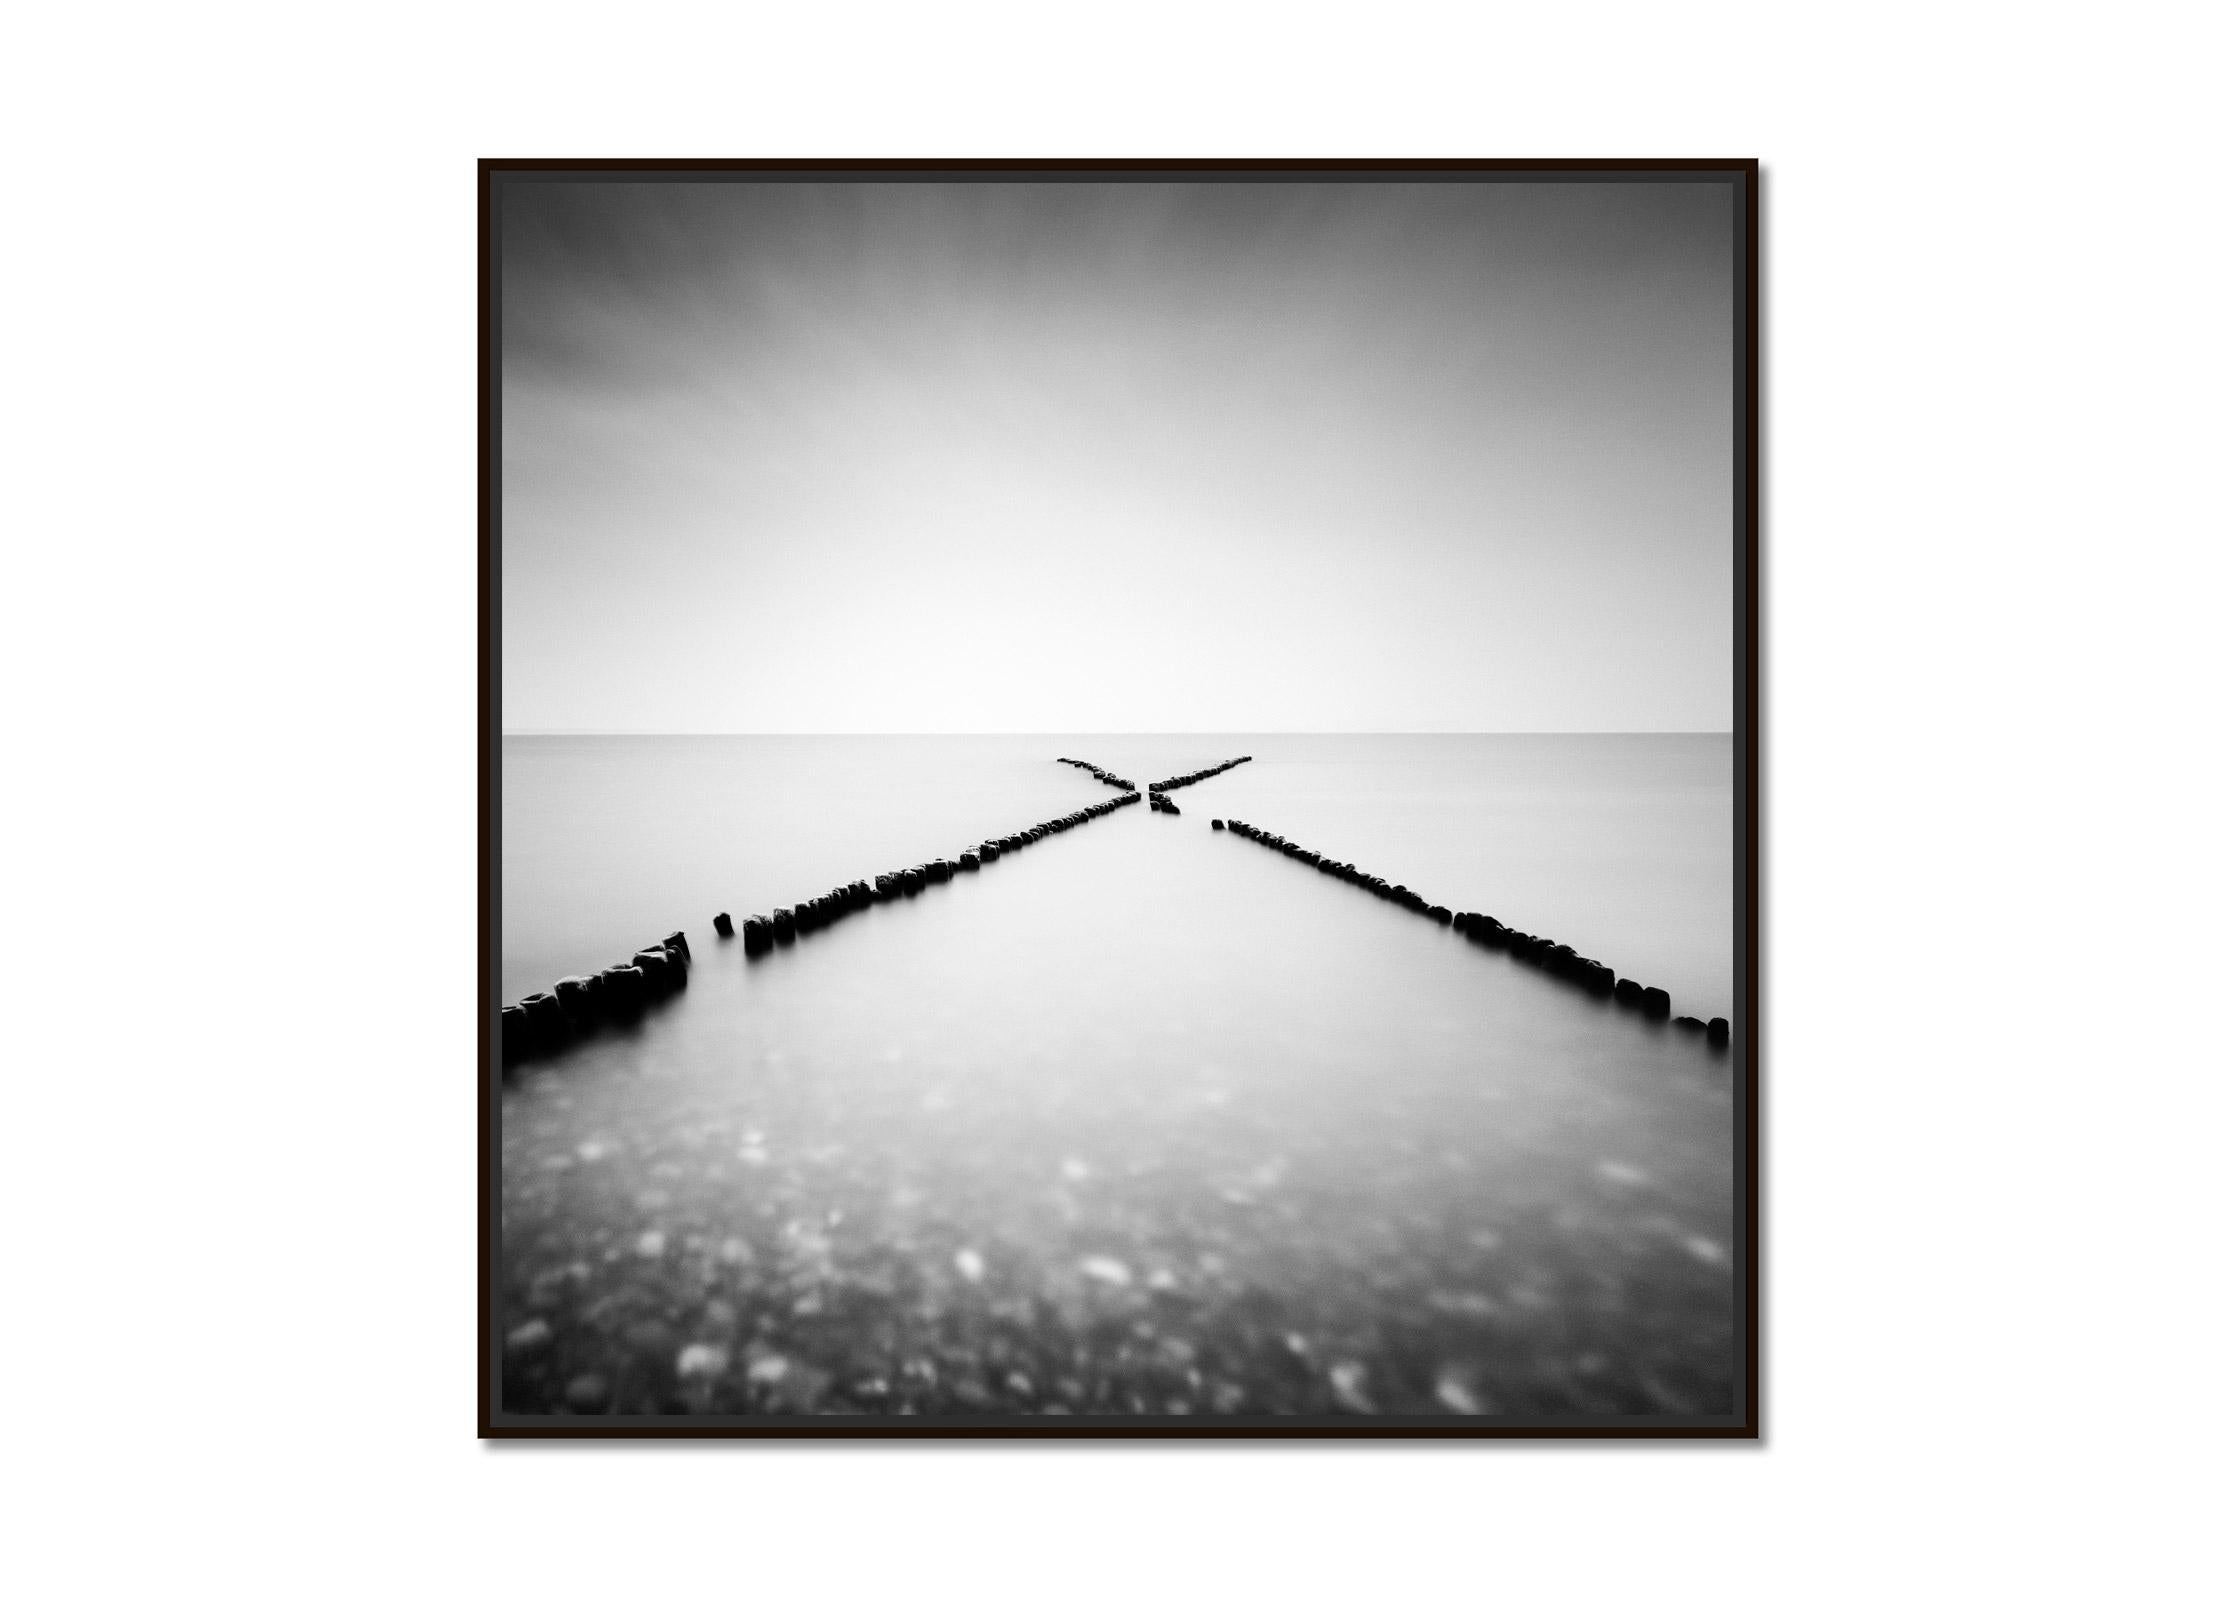 X - Factor, Sylt, Allemagne, longue exposition, photographie de paysage aquatique en noir et blanc - Photograph de Gerald Berghammer